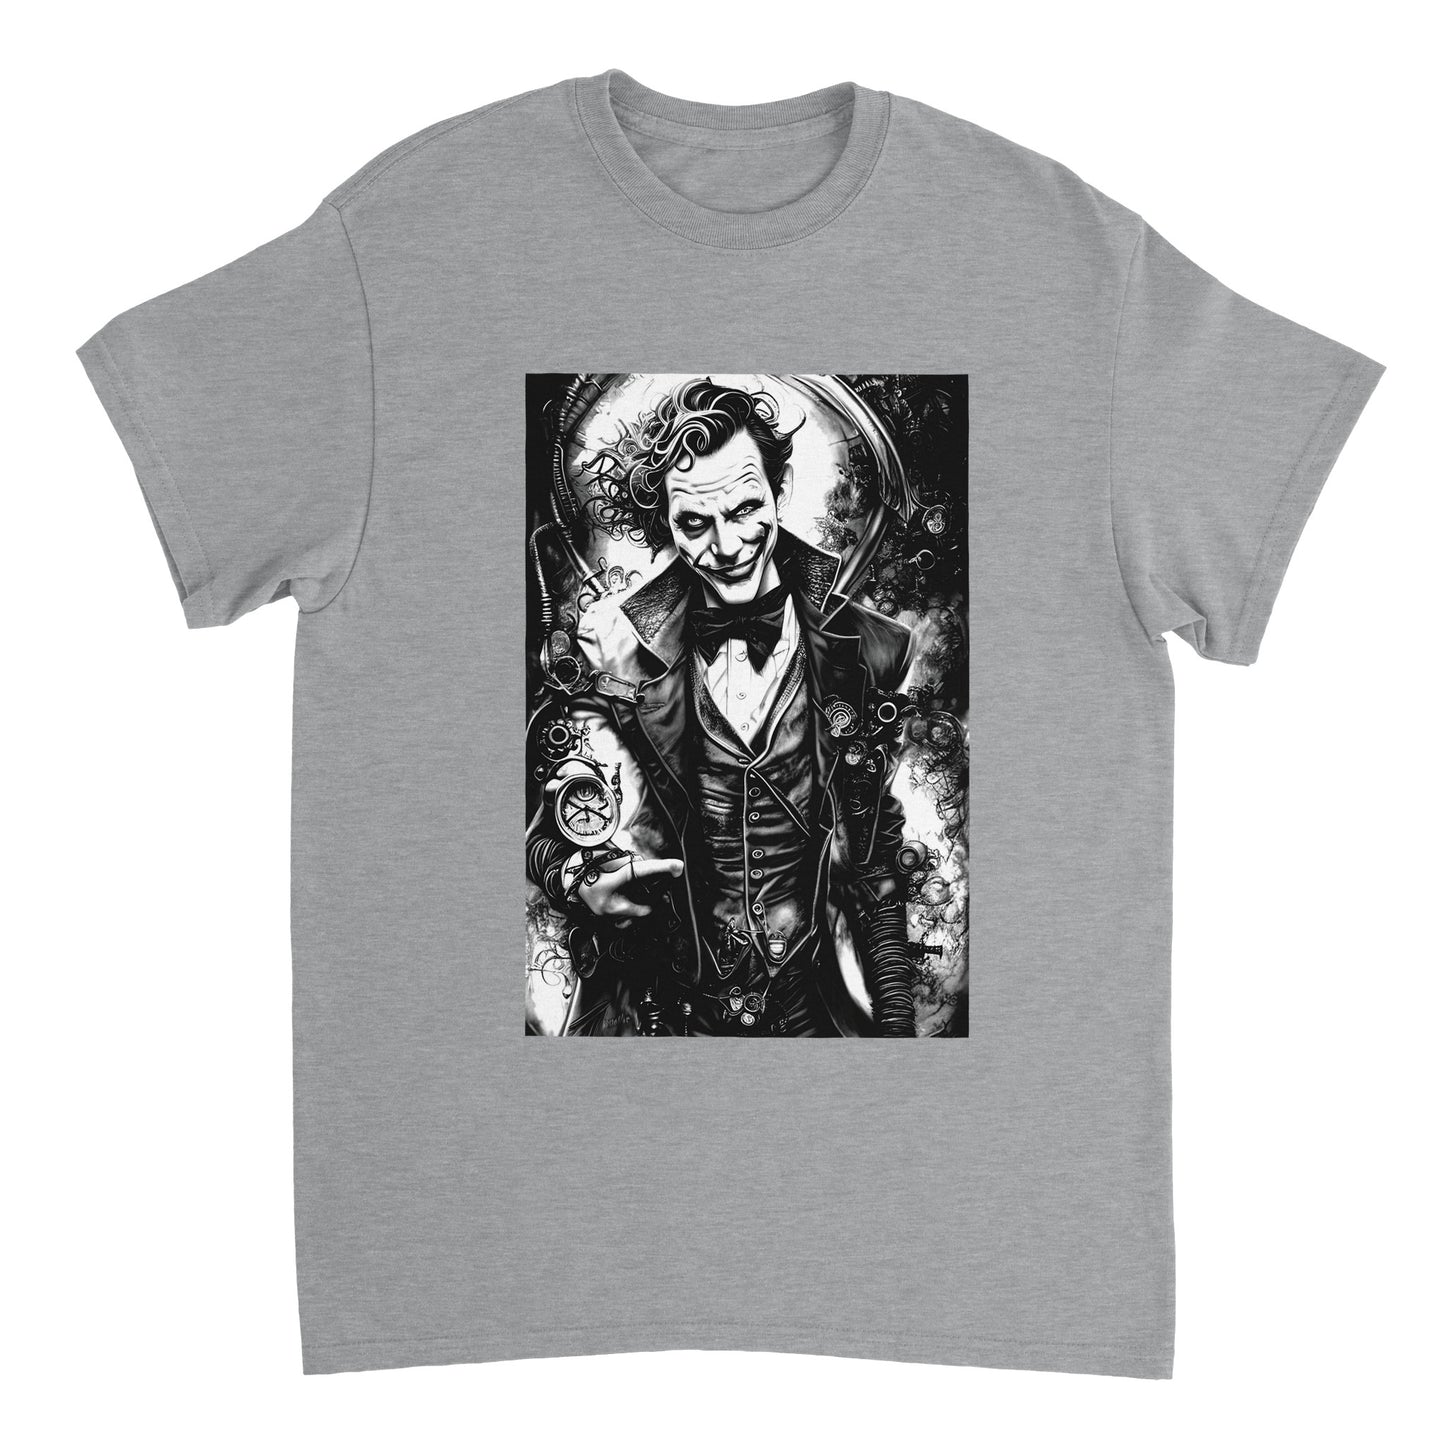 Budget Unisex Crewneck T-shirt/Joker